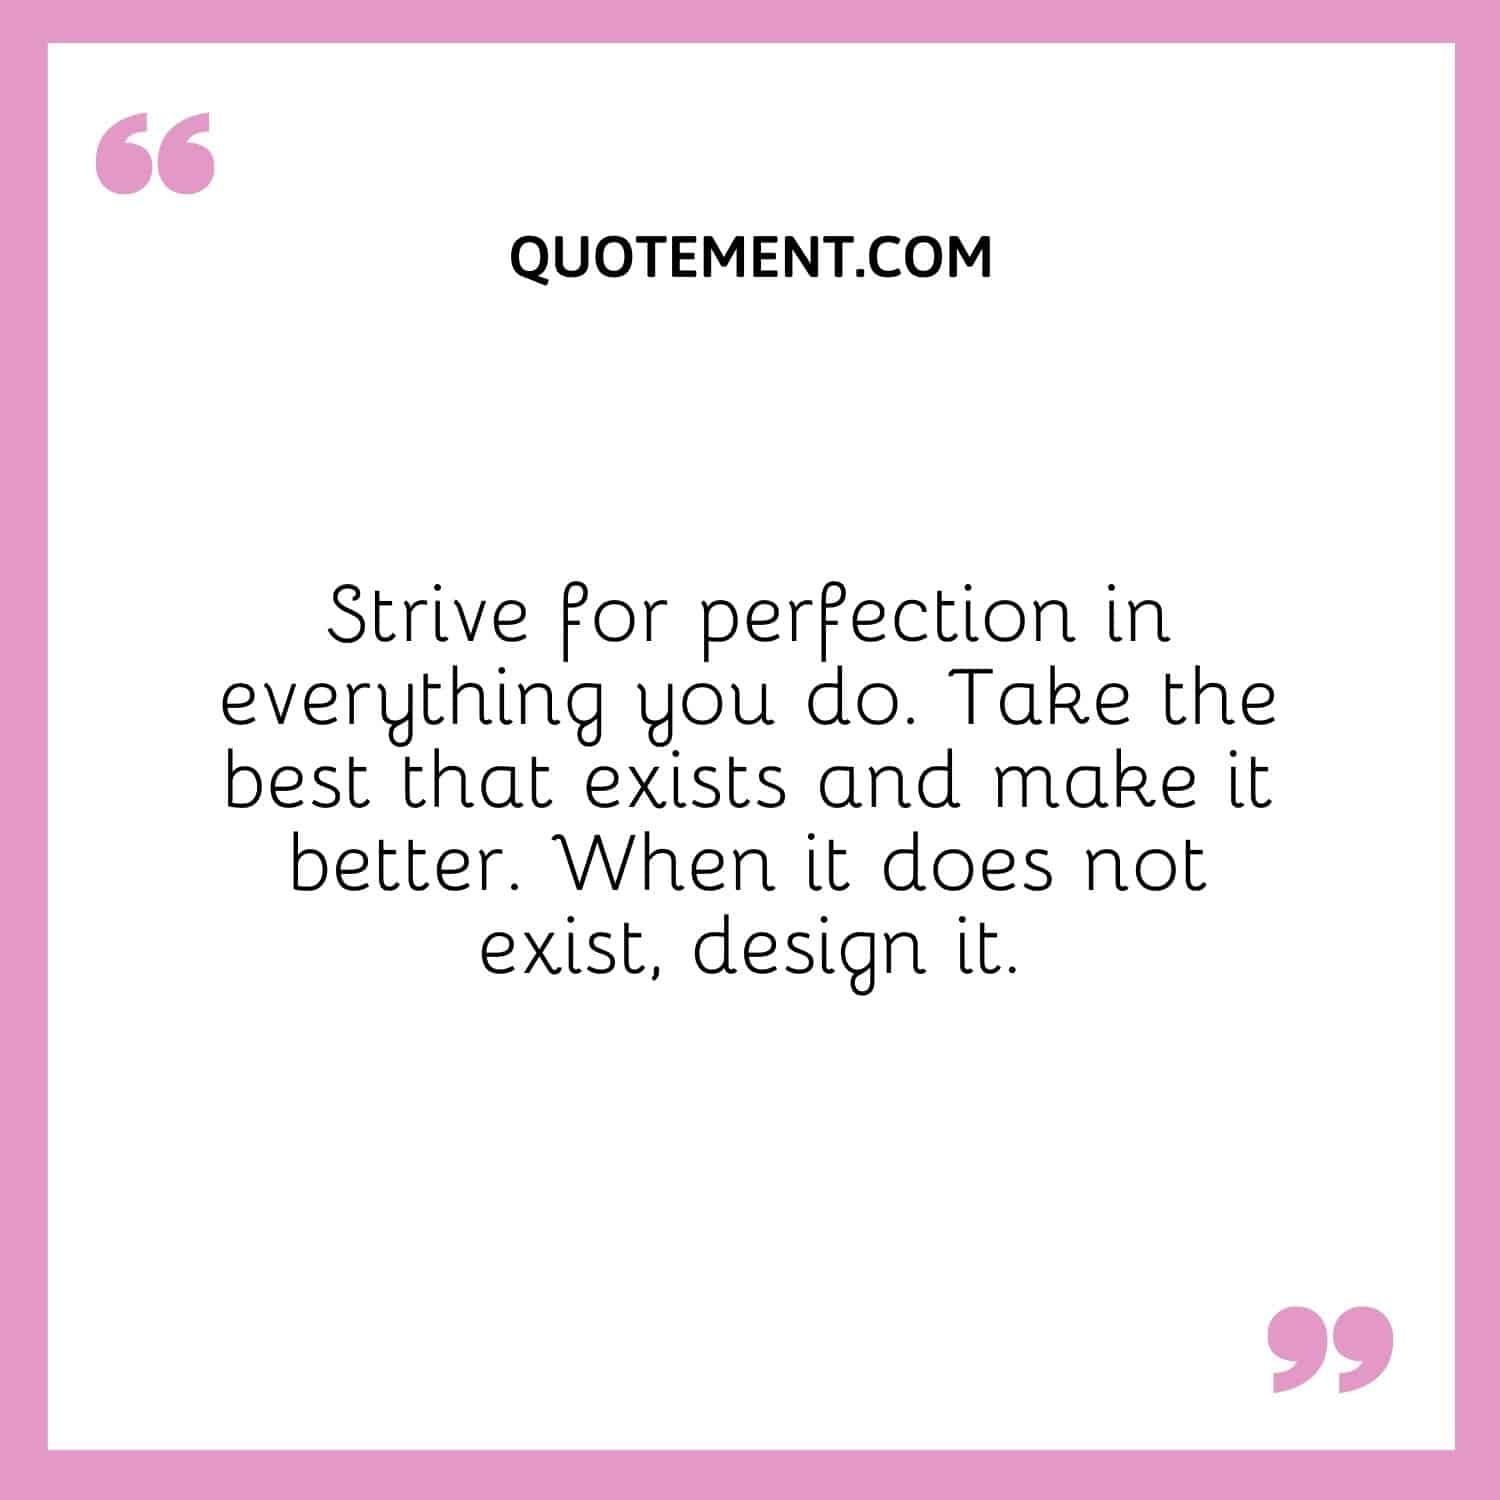 Esfuérzate por alcanzar la perfección en todo lo que hagas. Tome lo mejor que existe y mejórelo. Cuando no exista, diséñalo.